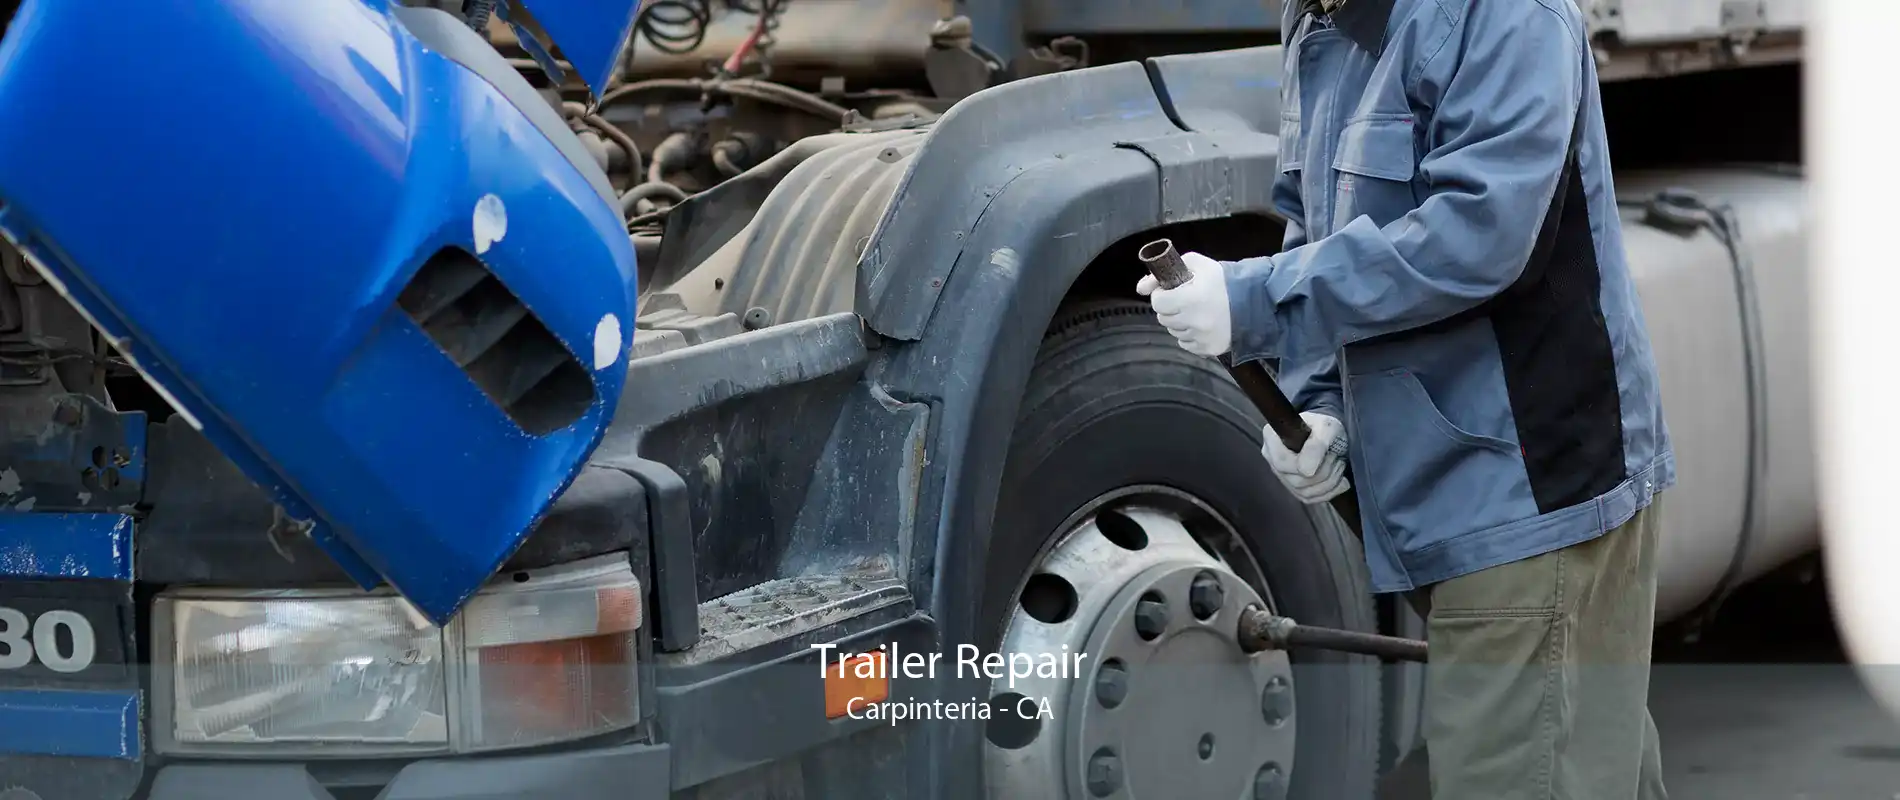 Trailer Repair Carpinteria - CA